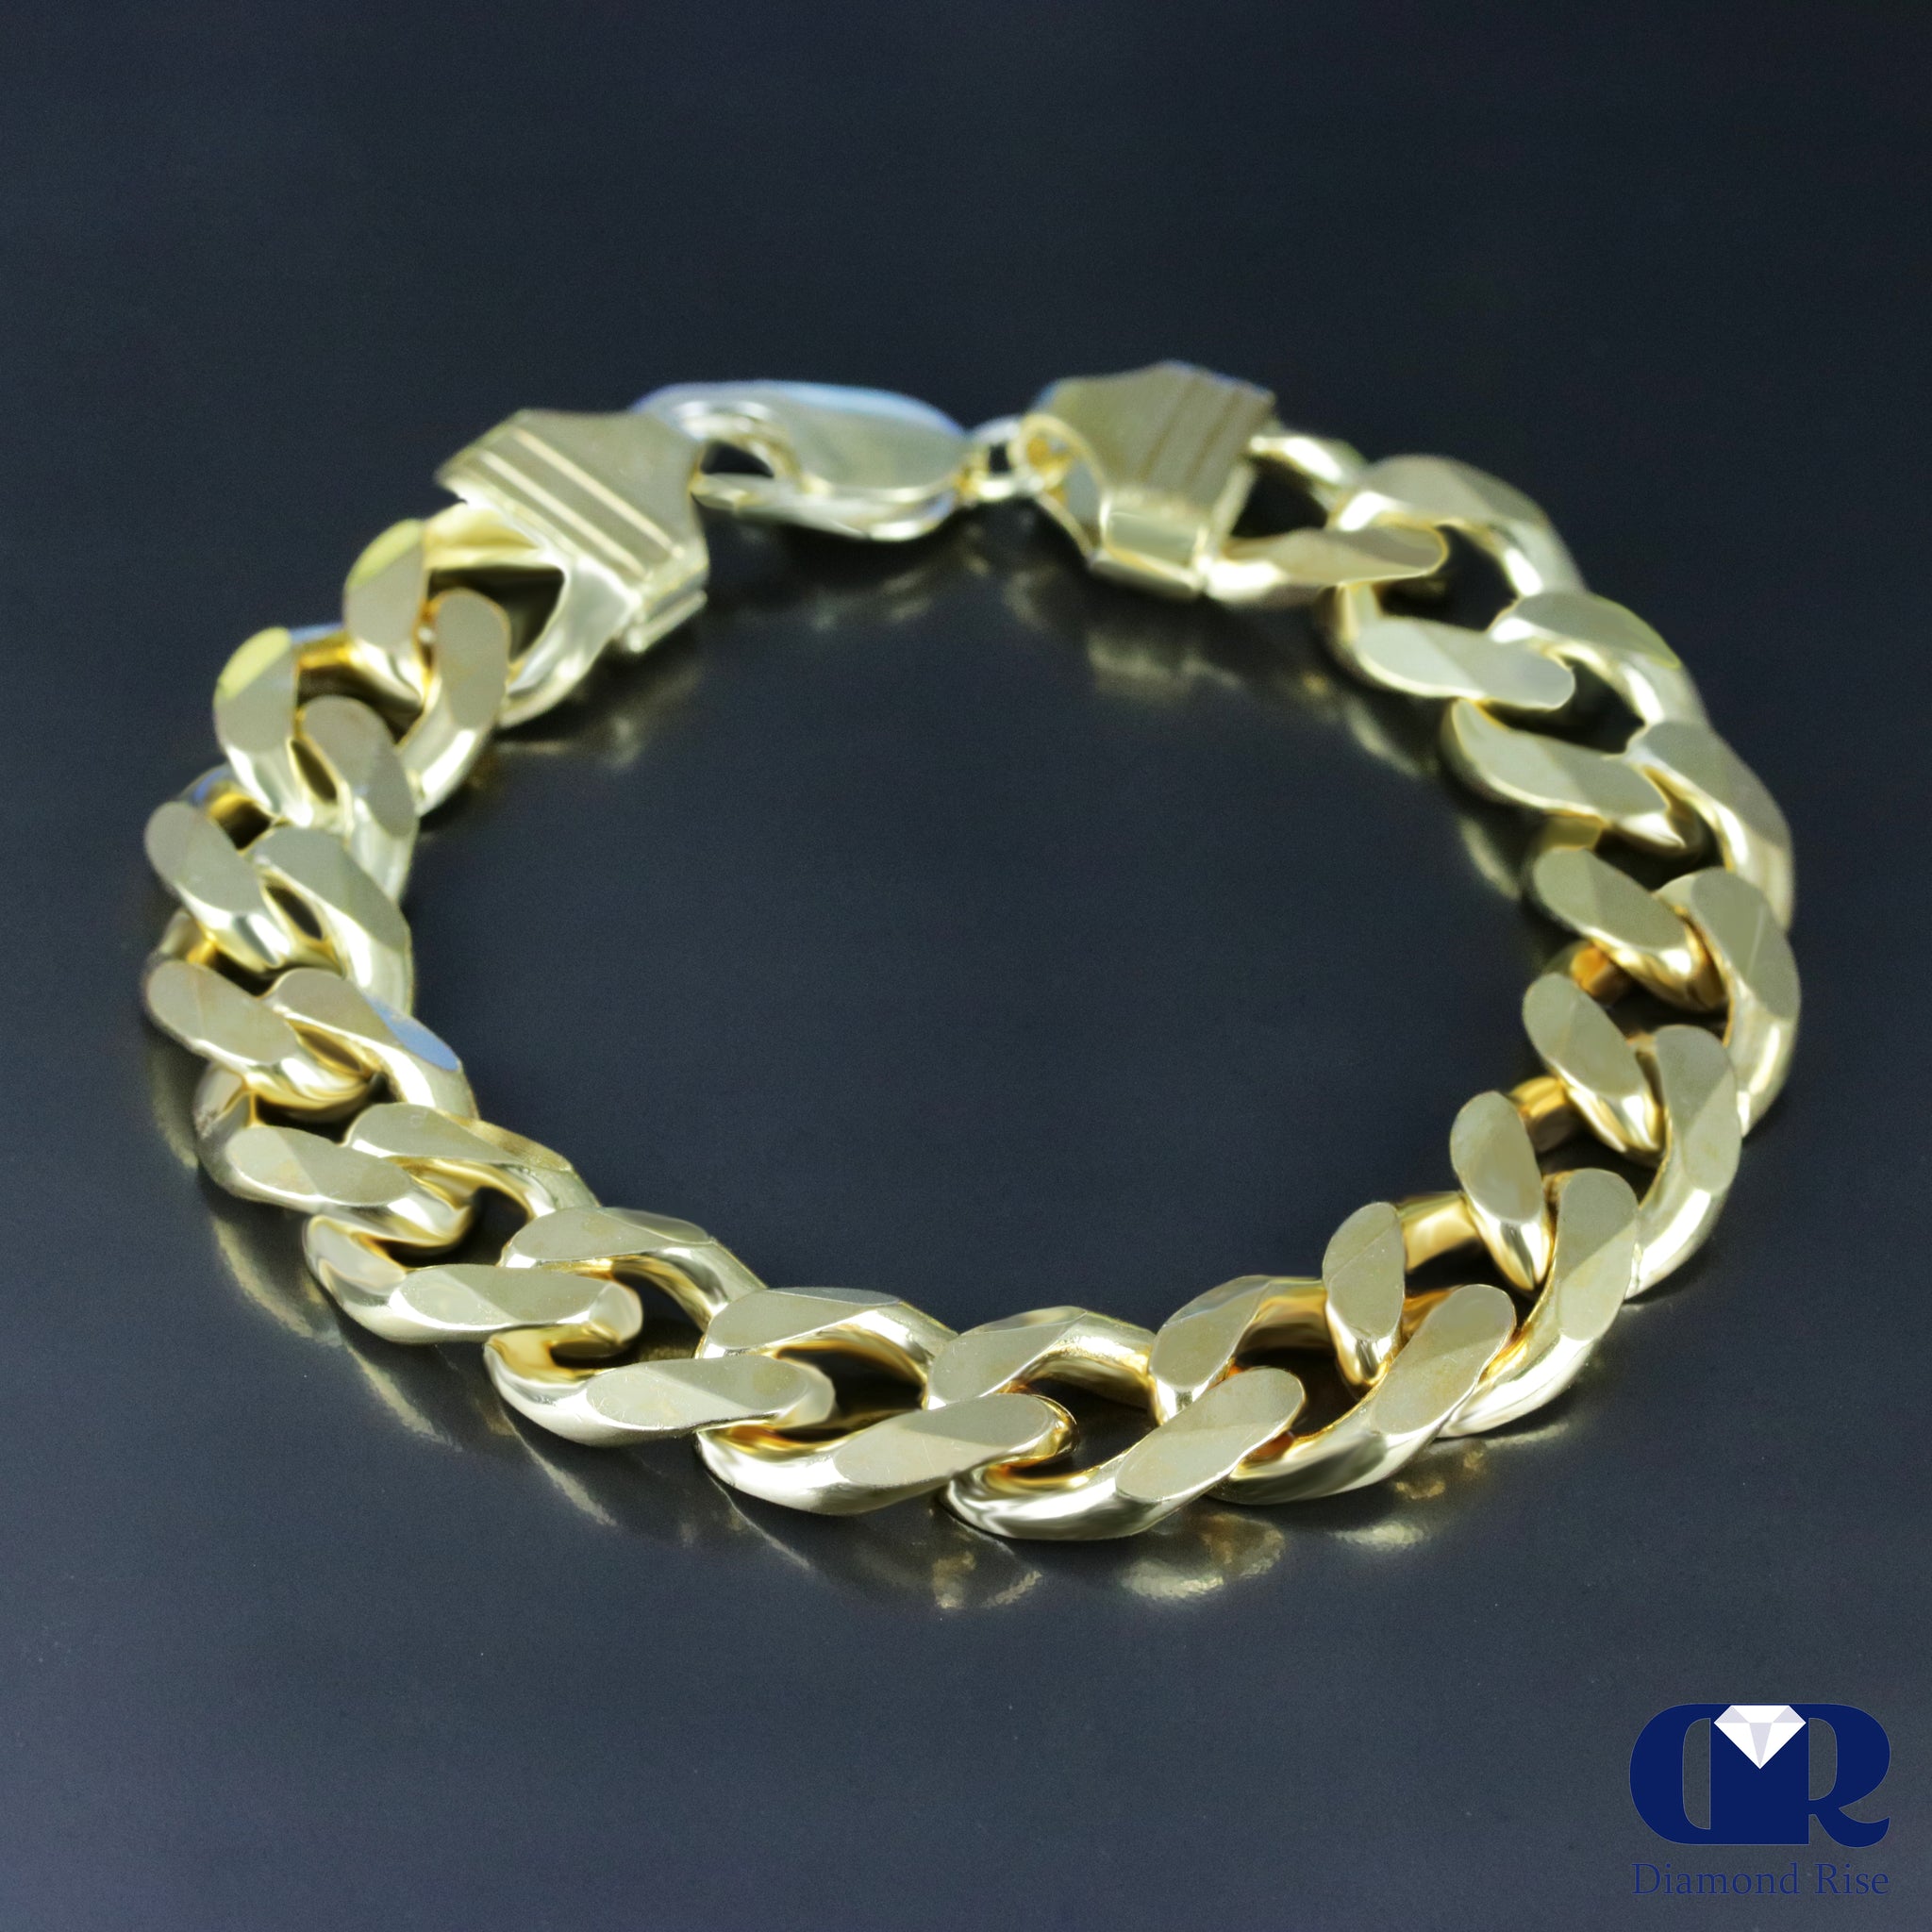 10K Gold Rope Chain Bracelet Rope Bracelet 10K Gold Bracelet Diamond Cut  Bracelet Real Gold Bracelet Men Women All Sizes 10K Rope - Etsy